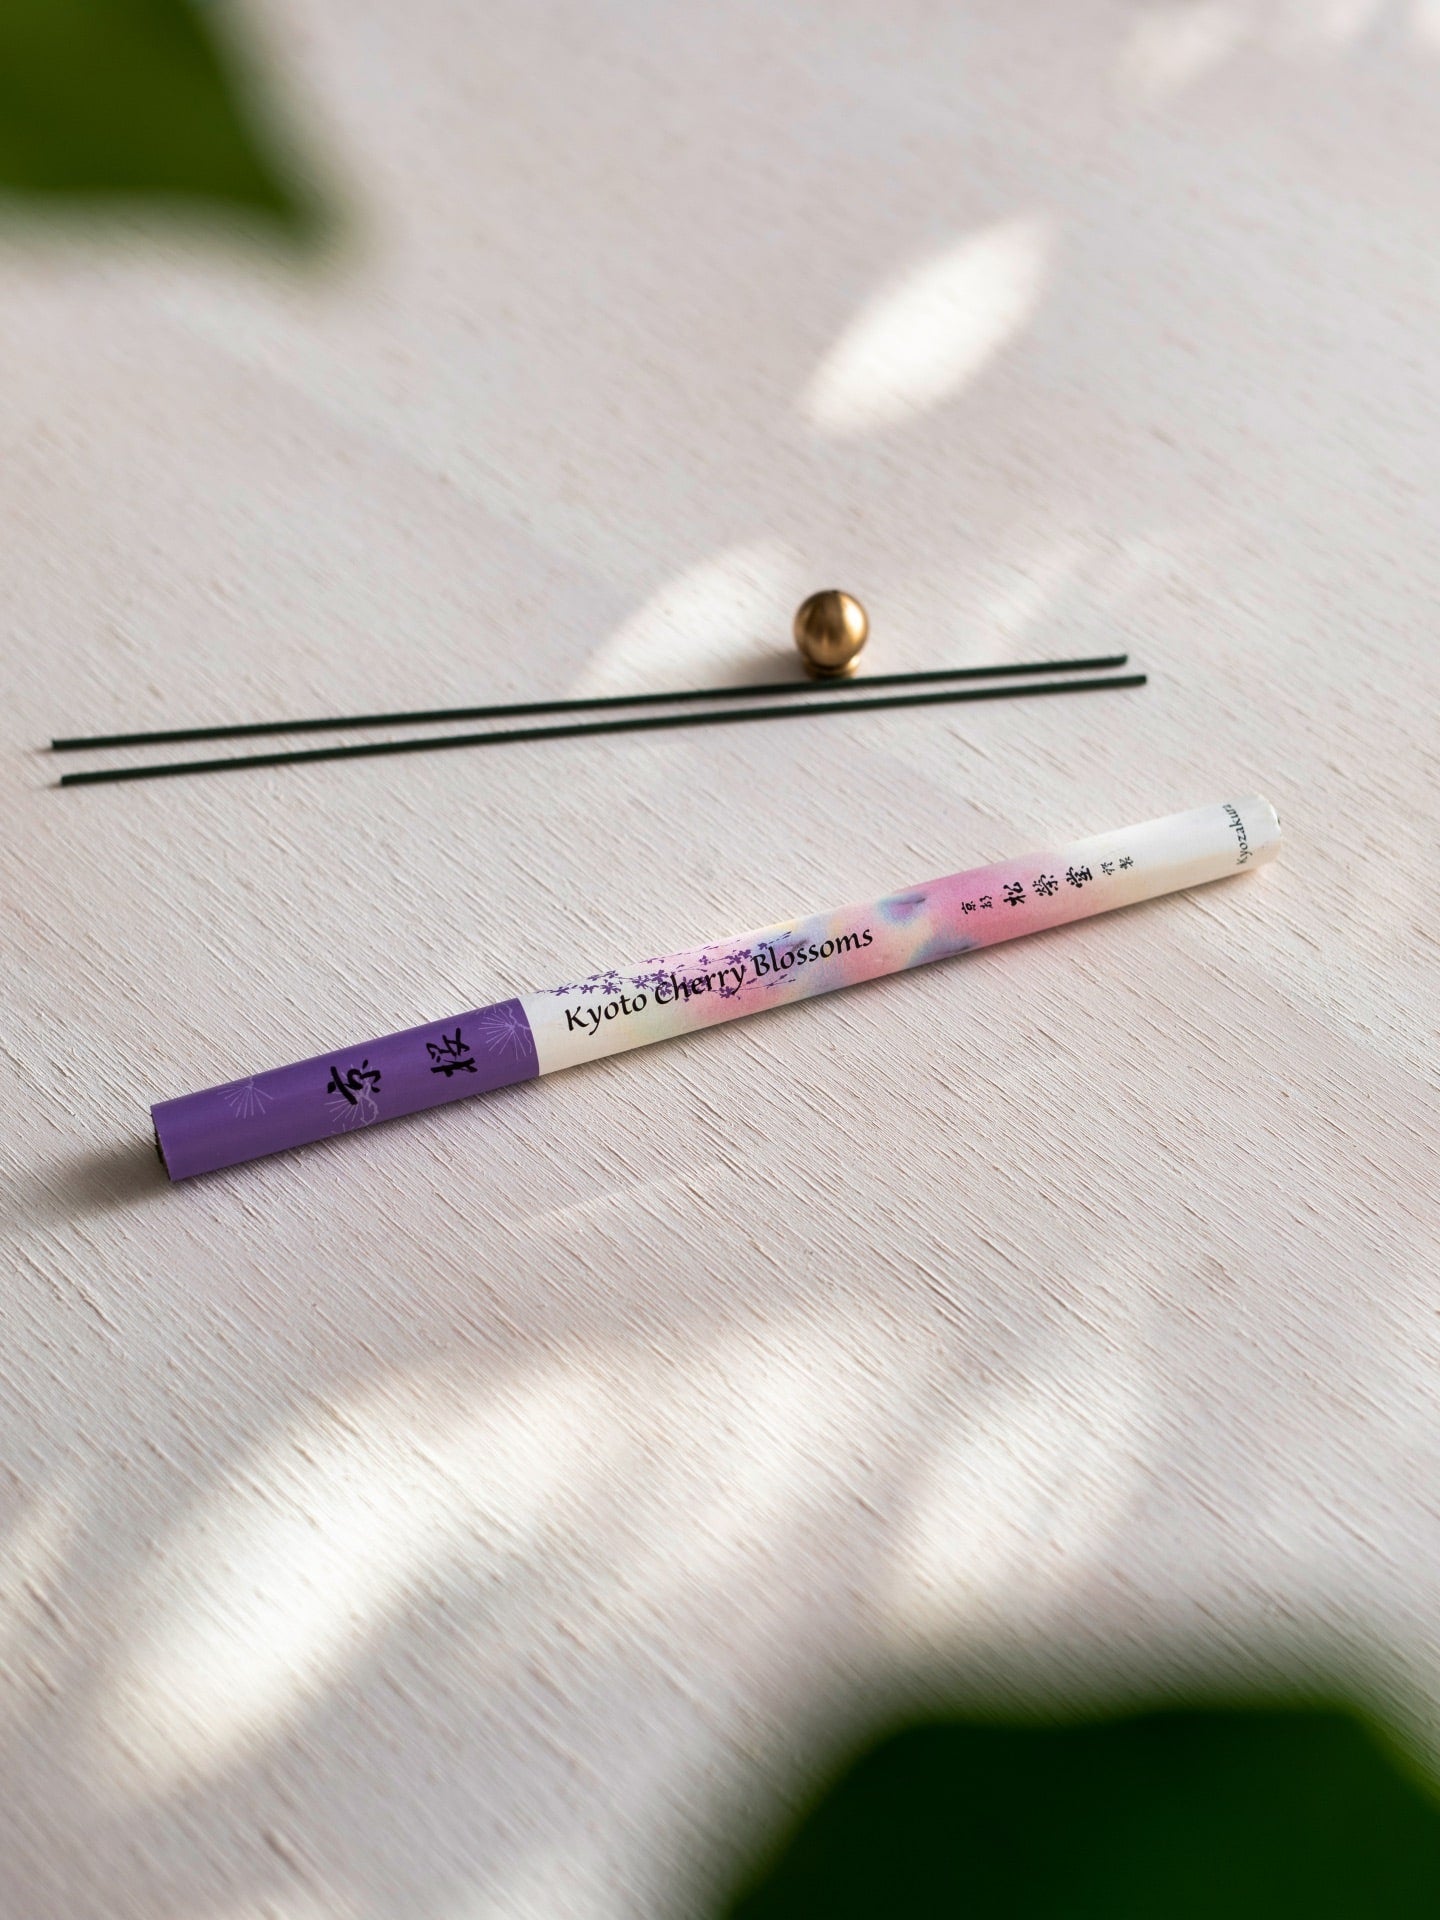 A Cherry Blossom – Kyozakura pencil with a purple flower on it next to a plant. (Brand: Senko)